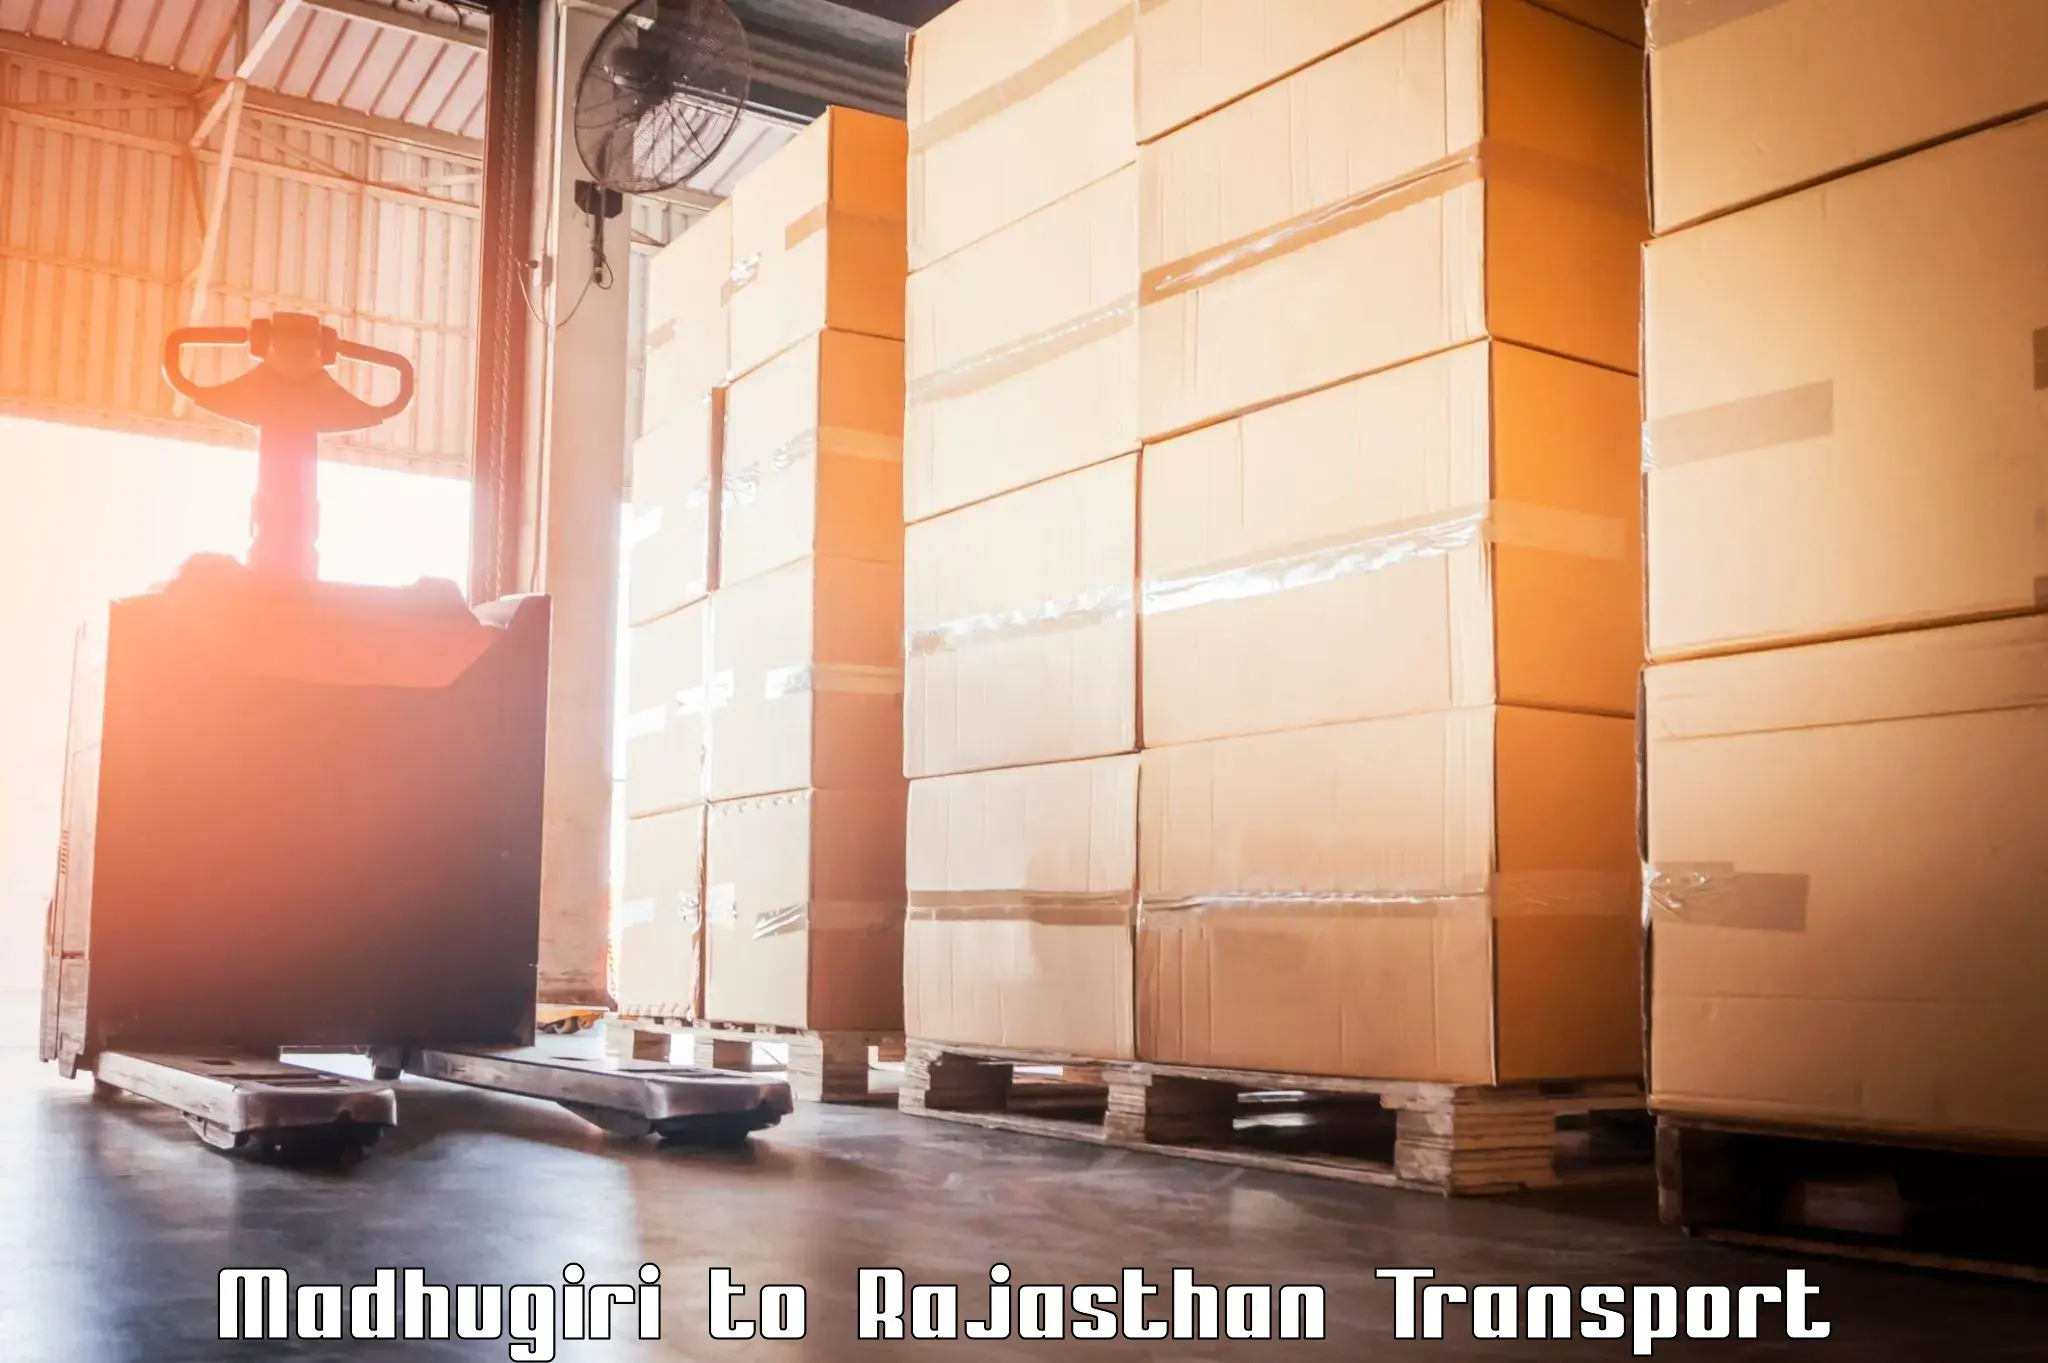 Shipping partner Madhugiri to Rajasthan